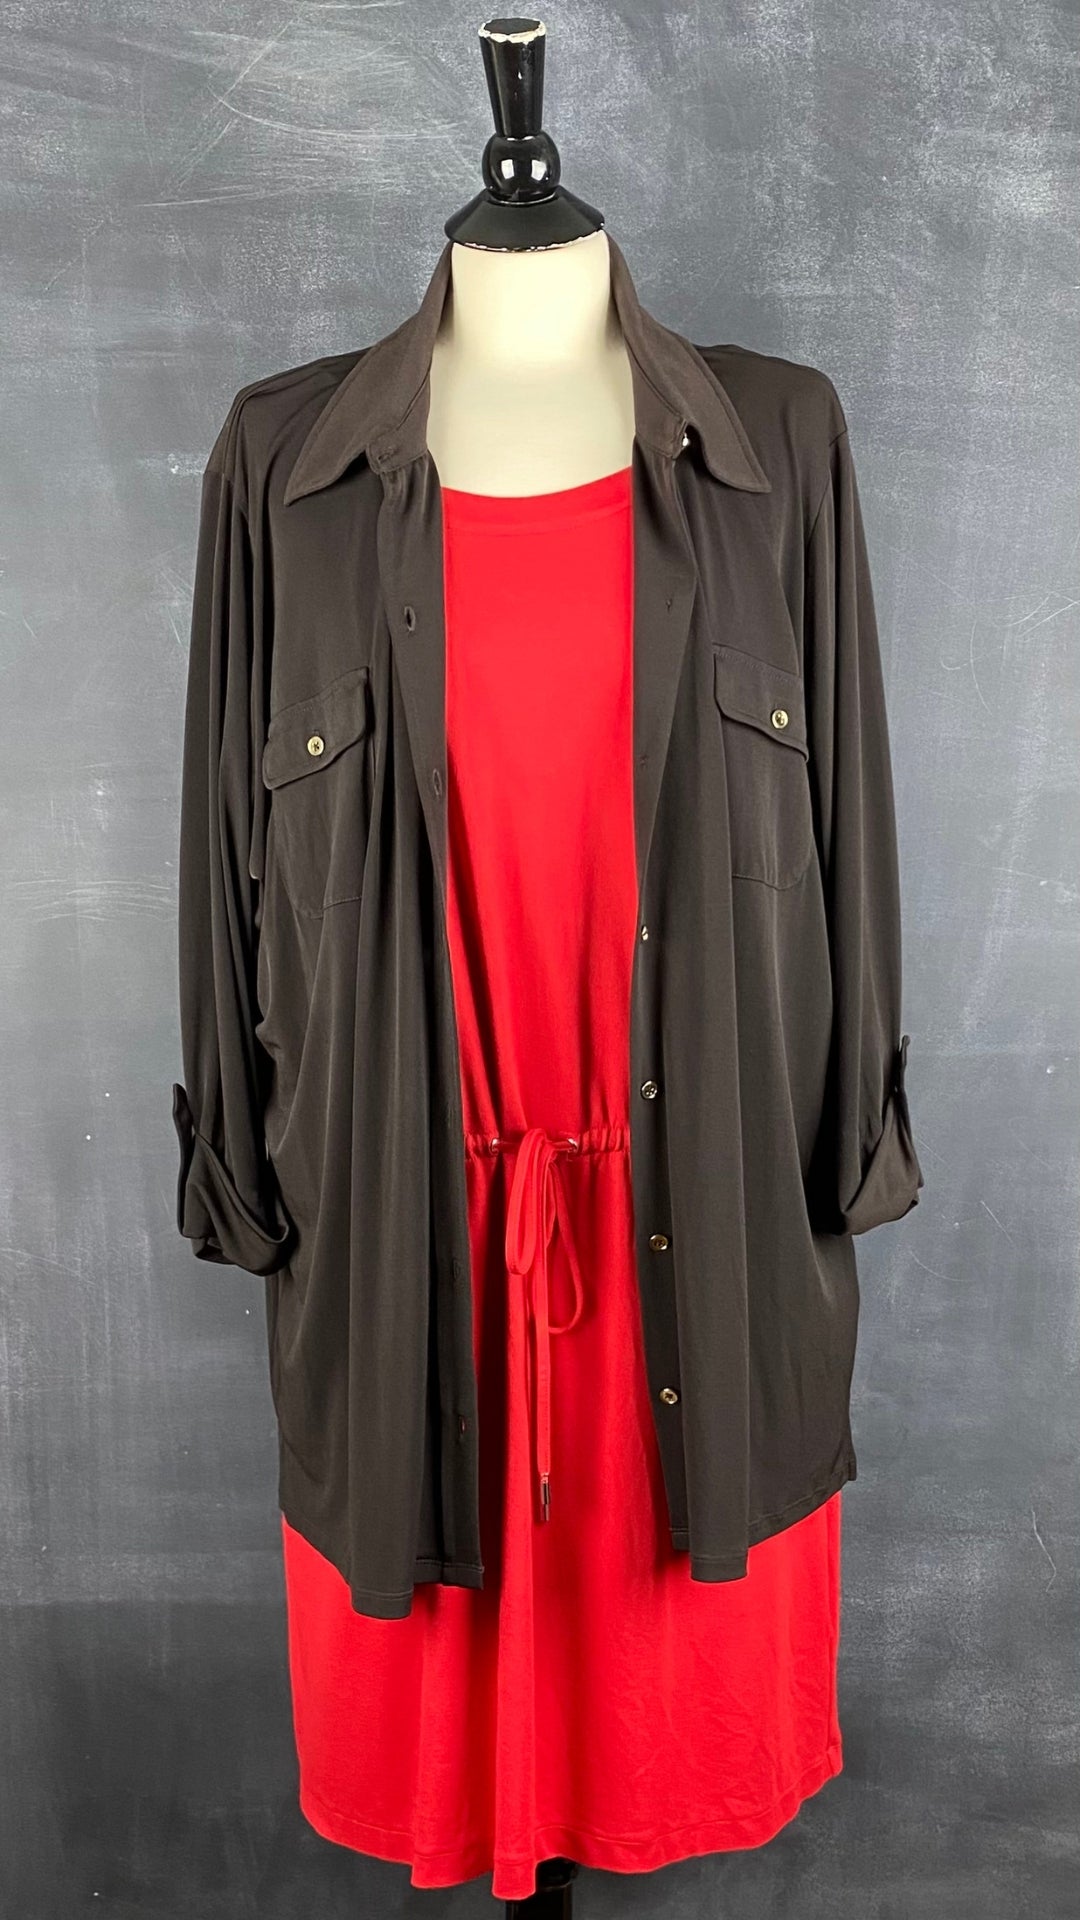 Robe en jersey extensible rouge avec poches Rachel Rachel Roy, taille xxl. Vue de l'agencement avec le chemisier fluide espresso.